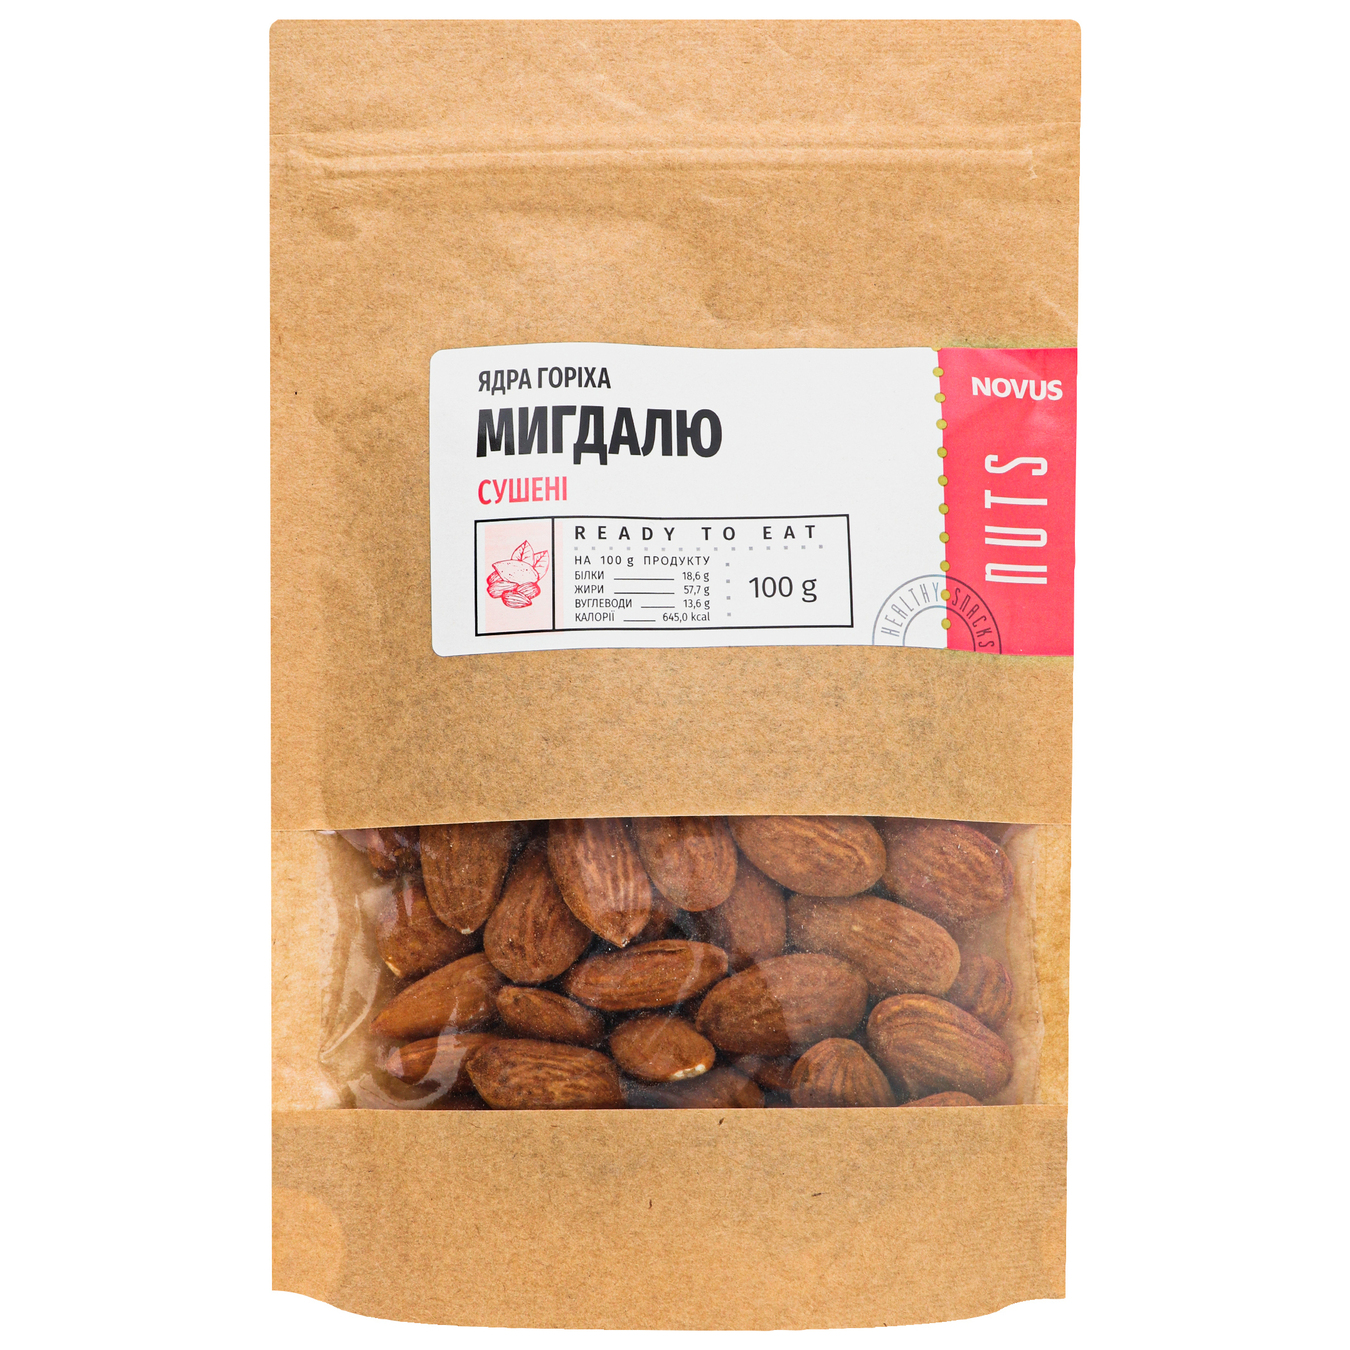 Novus Dried Almond Kernels 100g